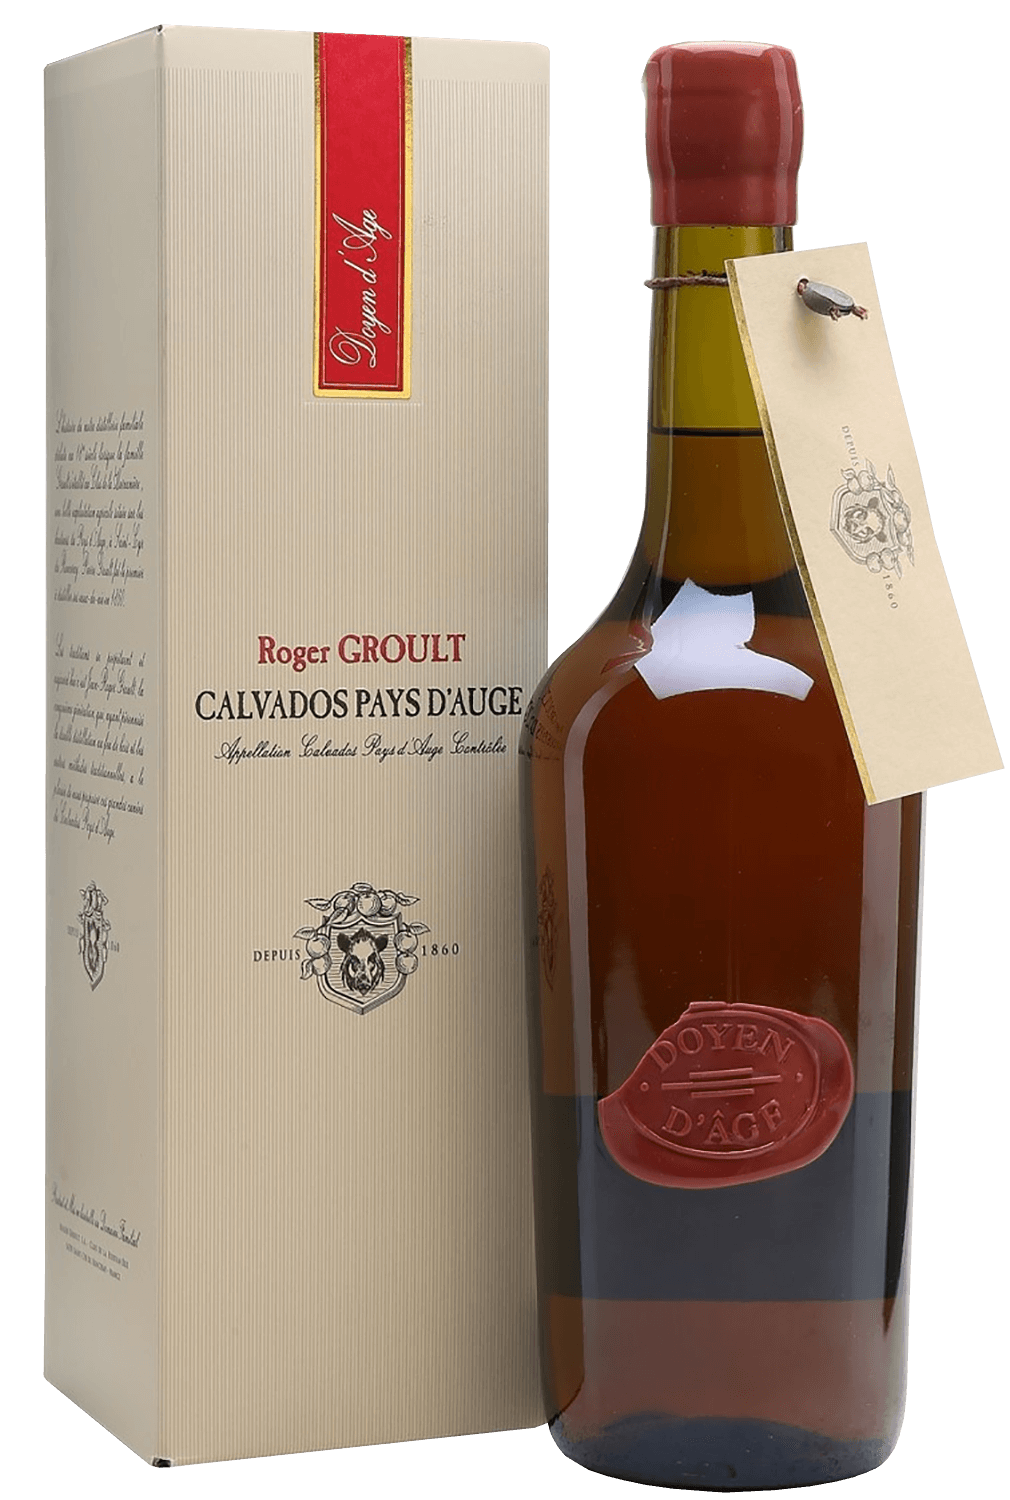 Doyen d'Or Calvados Pays D'Auge AOC Roger Groult (gift box) doyen d or calvados pays d auge aoc roger groult gift box